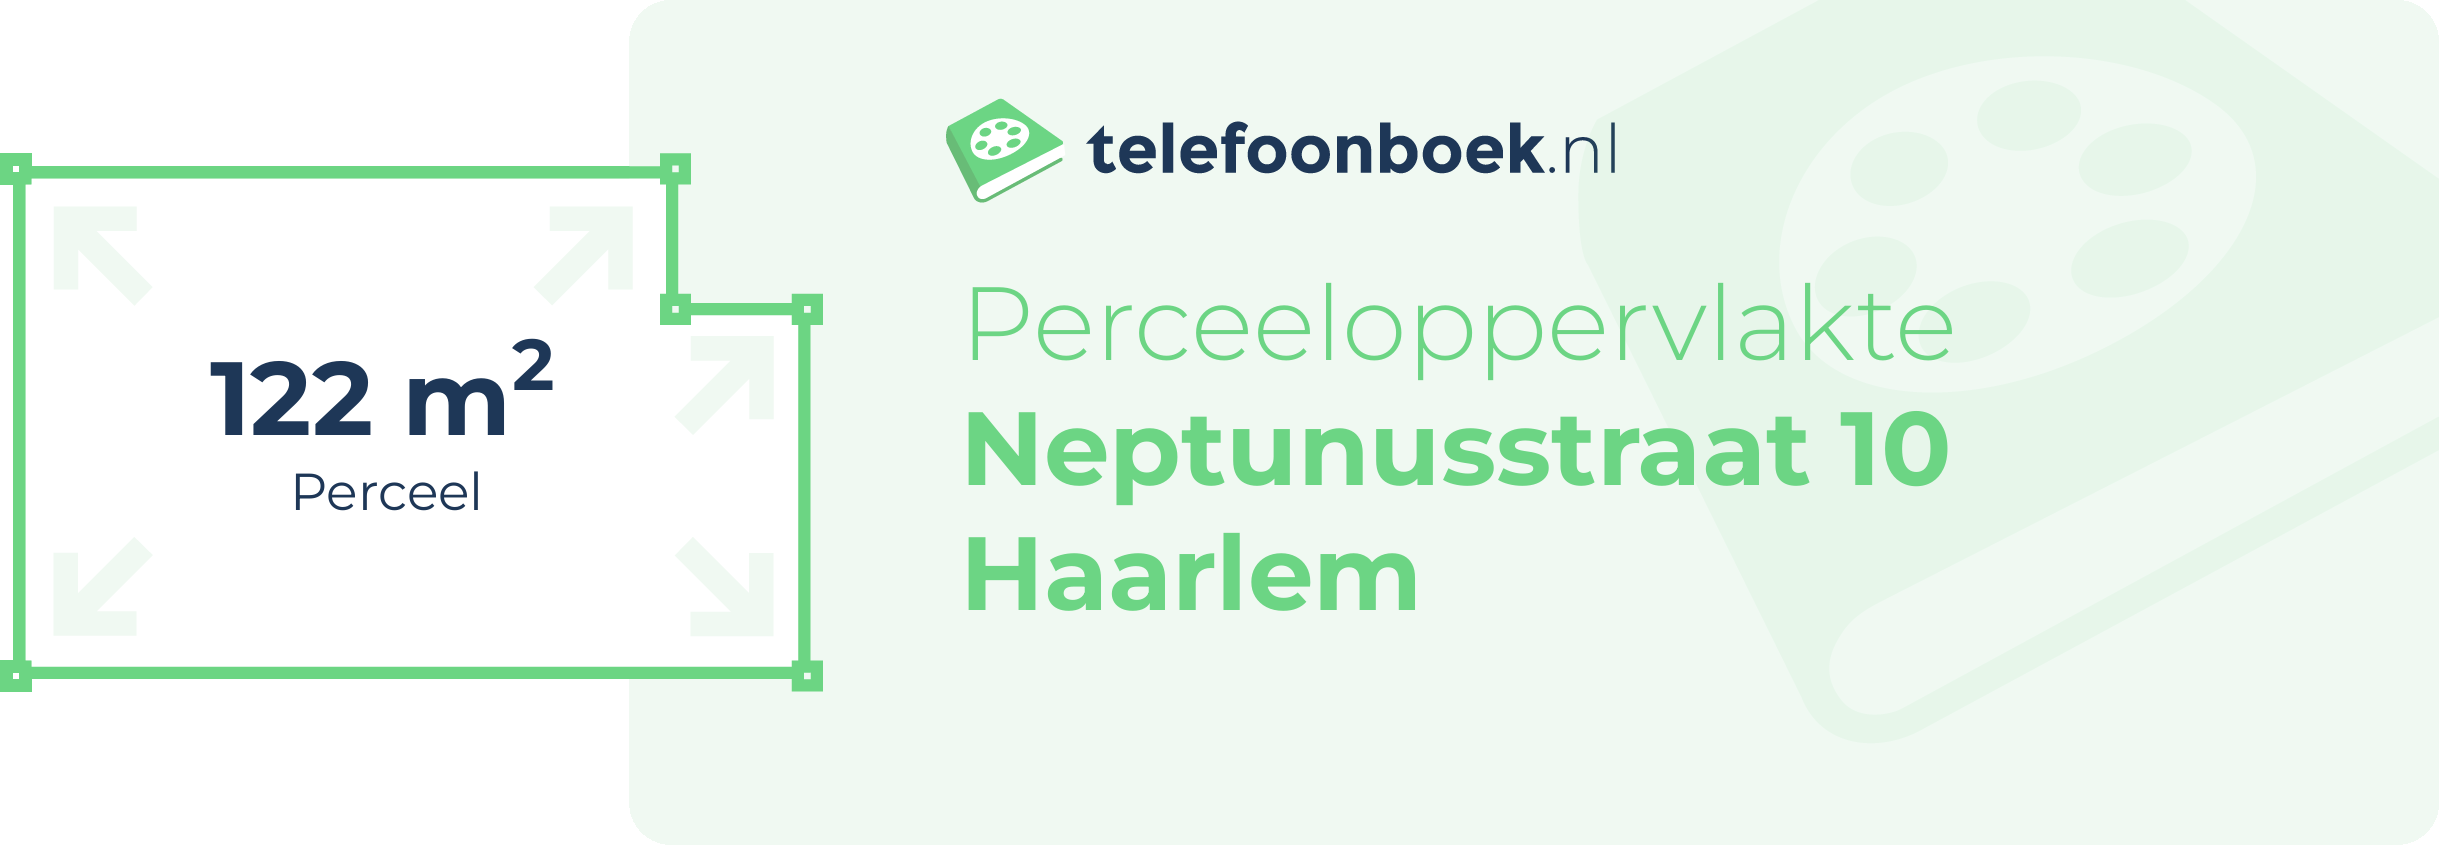 Perceeloppervlakte Neptunusstraat 10 Haarlem